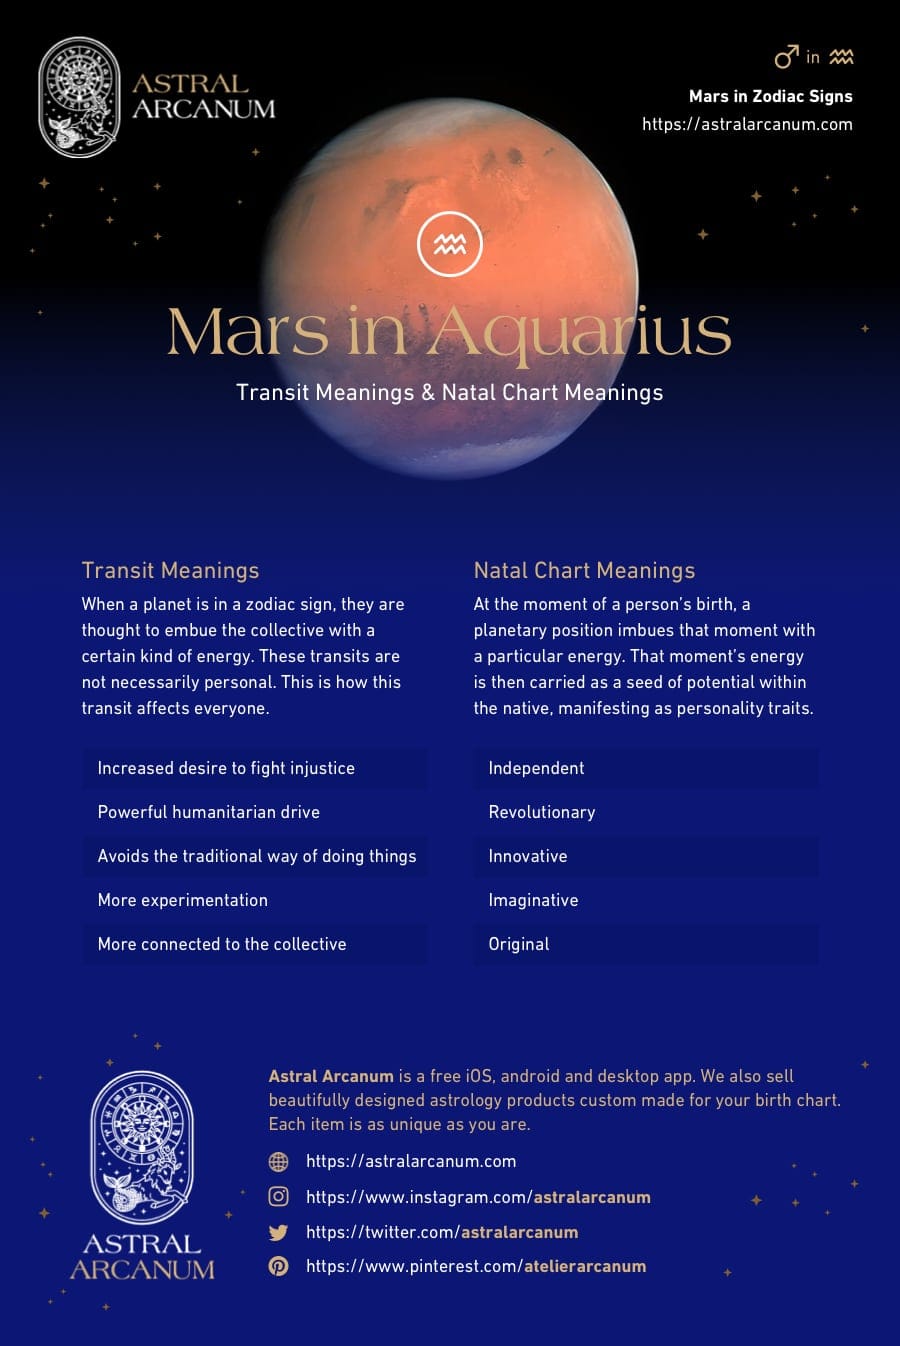  Marss Ūdensvīra zīmē nozīme un personības iezīmes